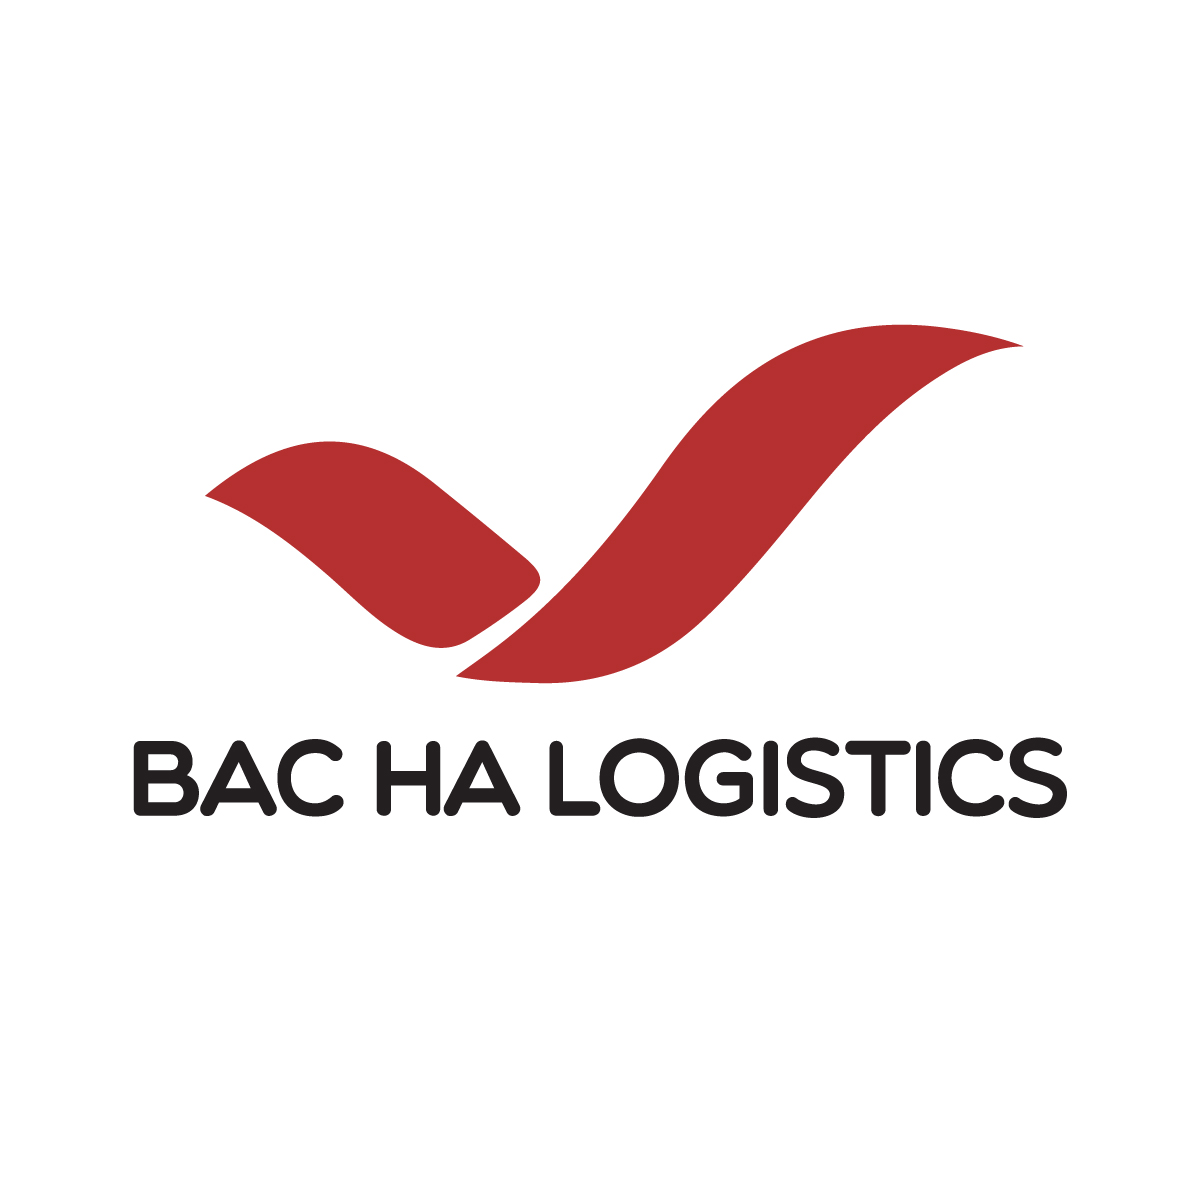 Kinh nghiệm thiết kế logo ngành vận tải